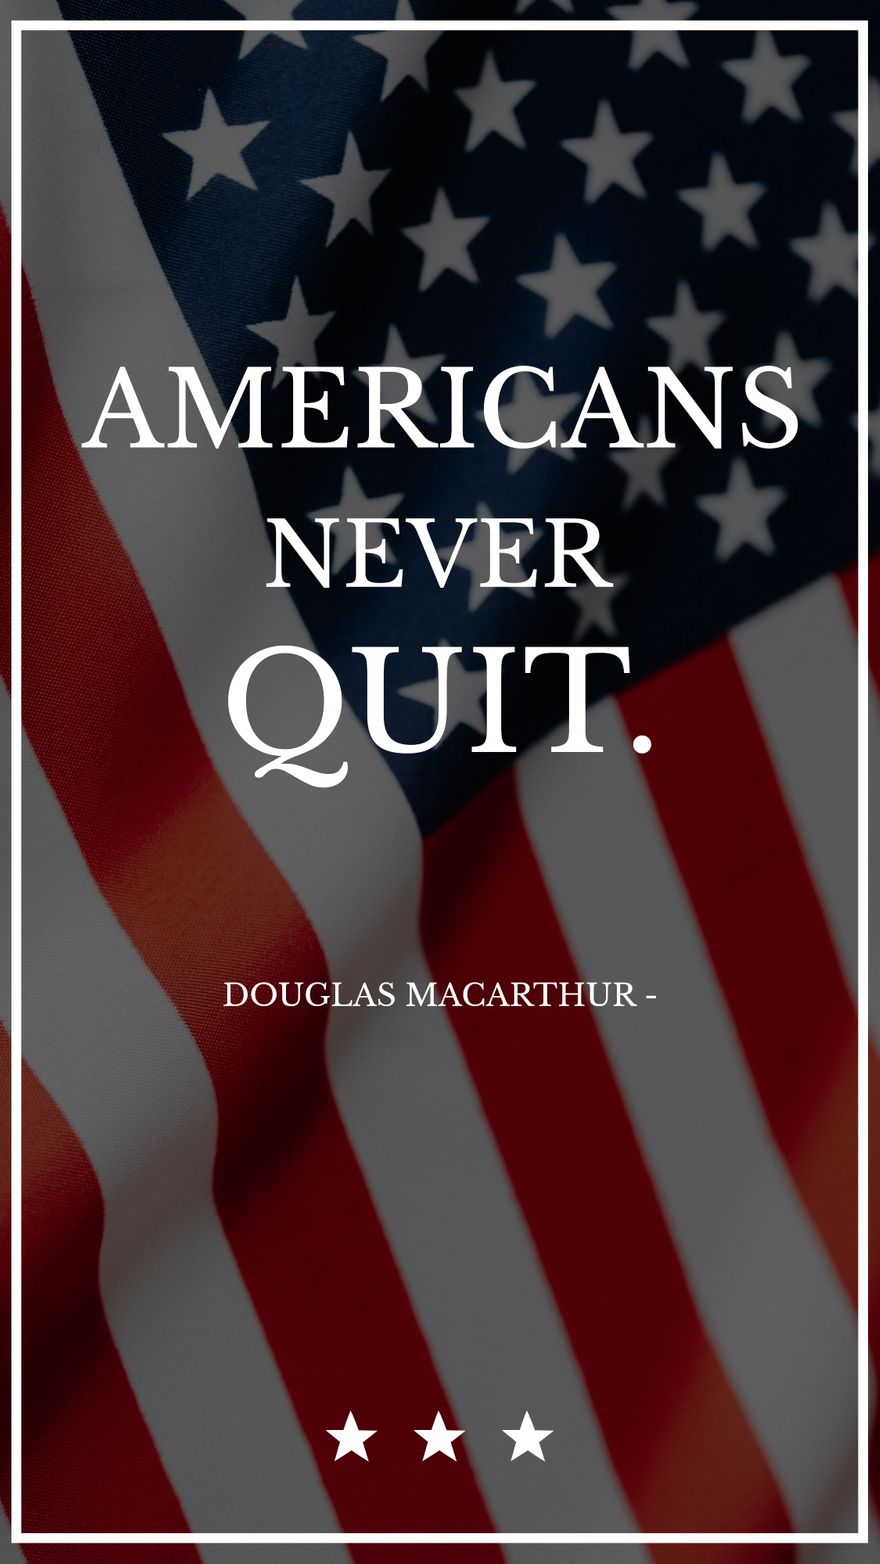 Douglas MacArthur - Americans never quit.